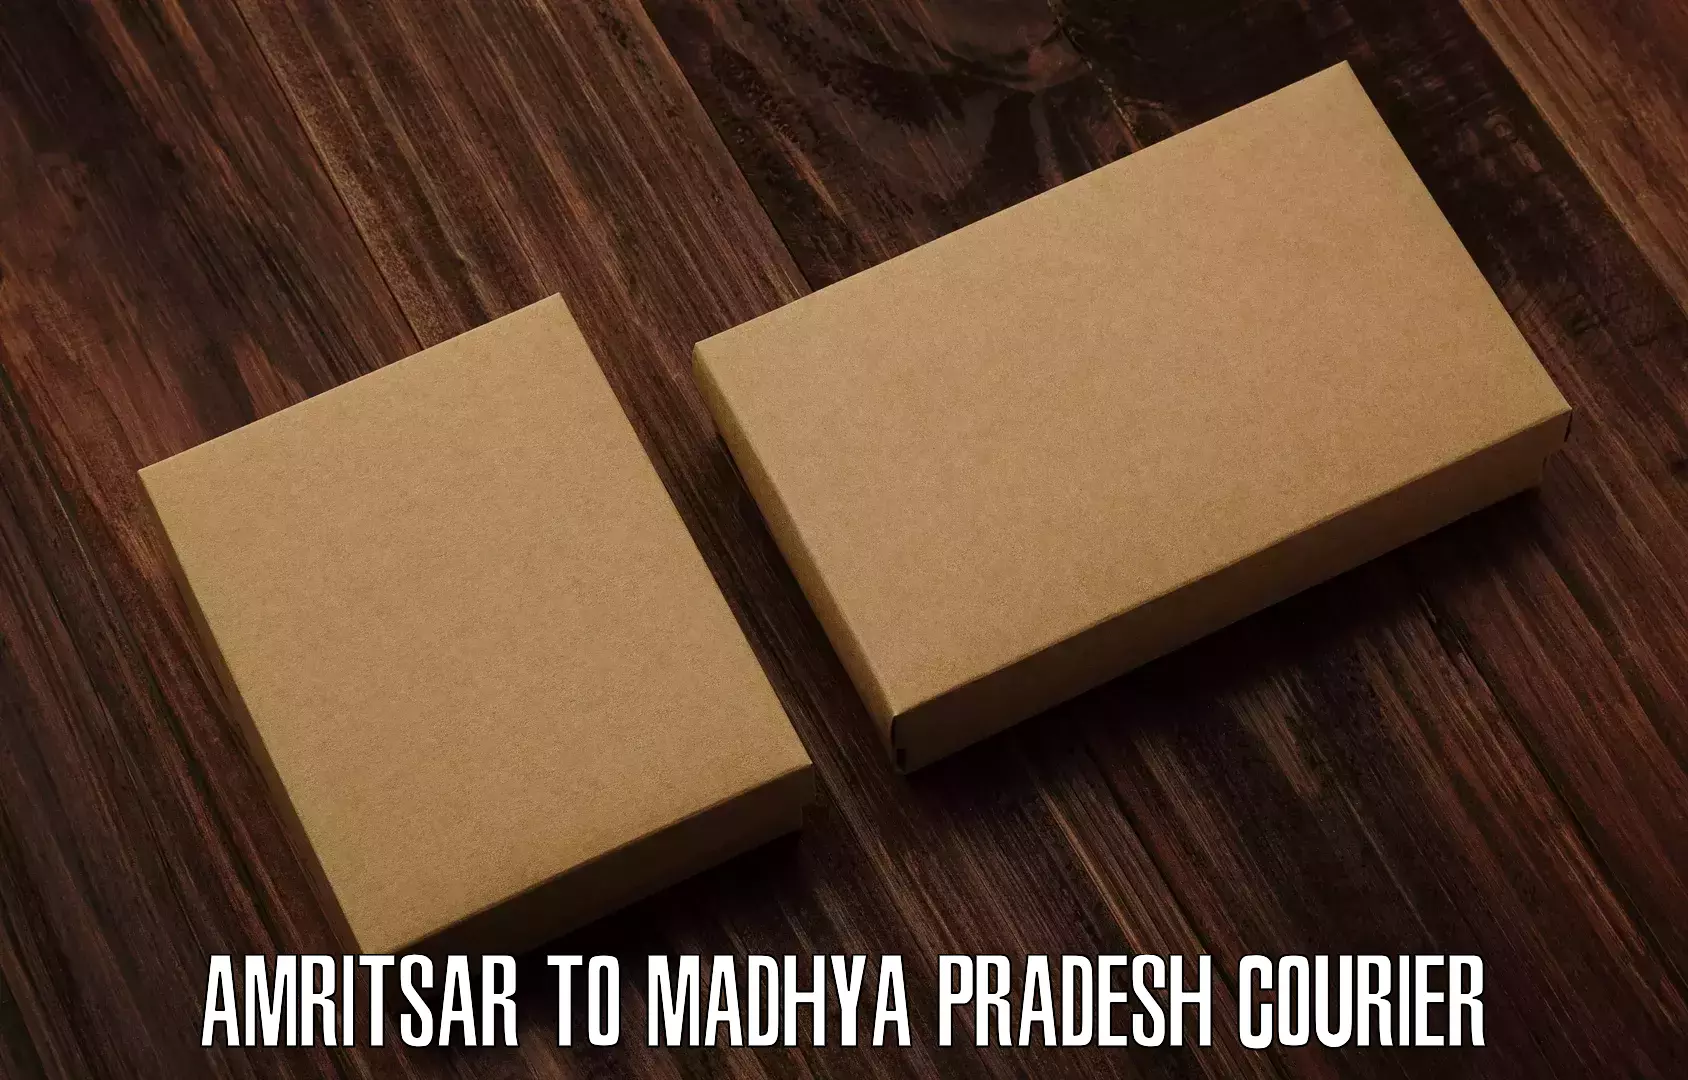 Affordable parcel rates Amritsar to Madhya Pradesh